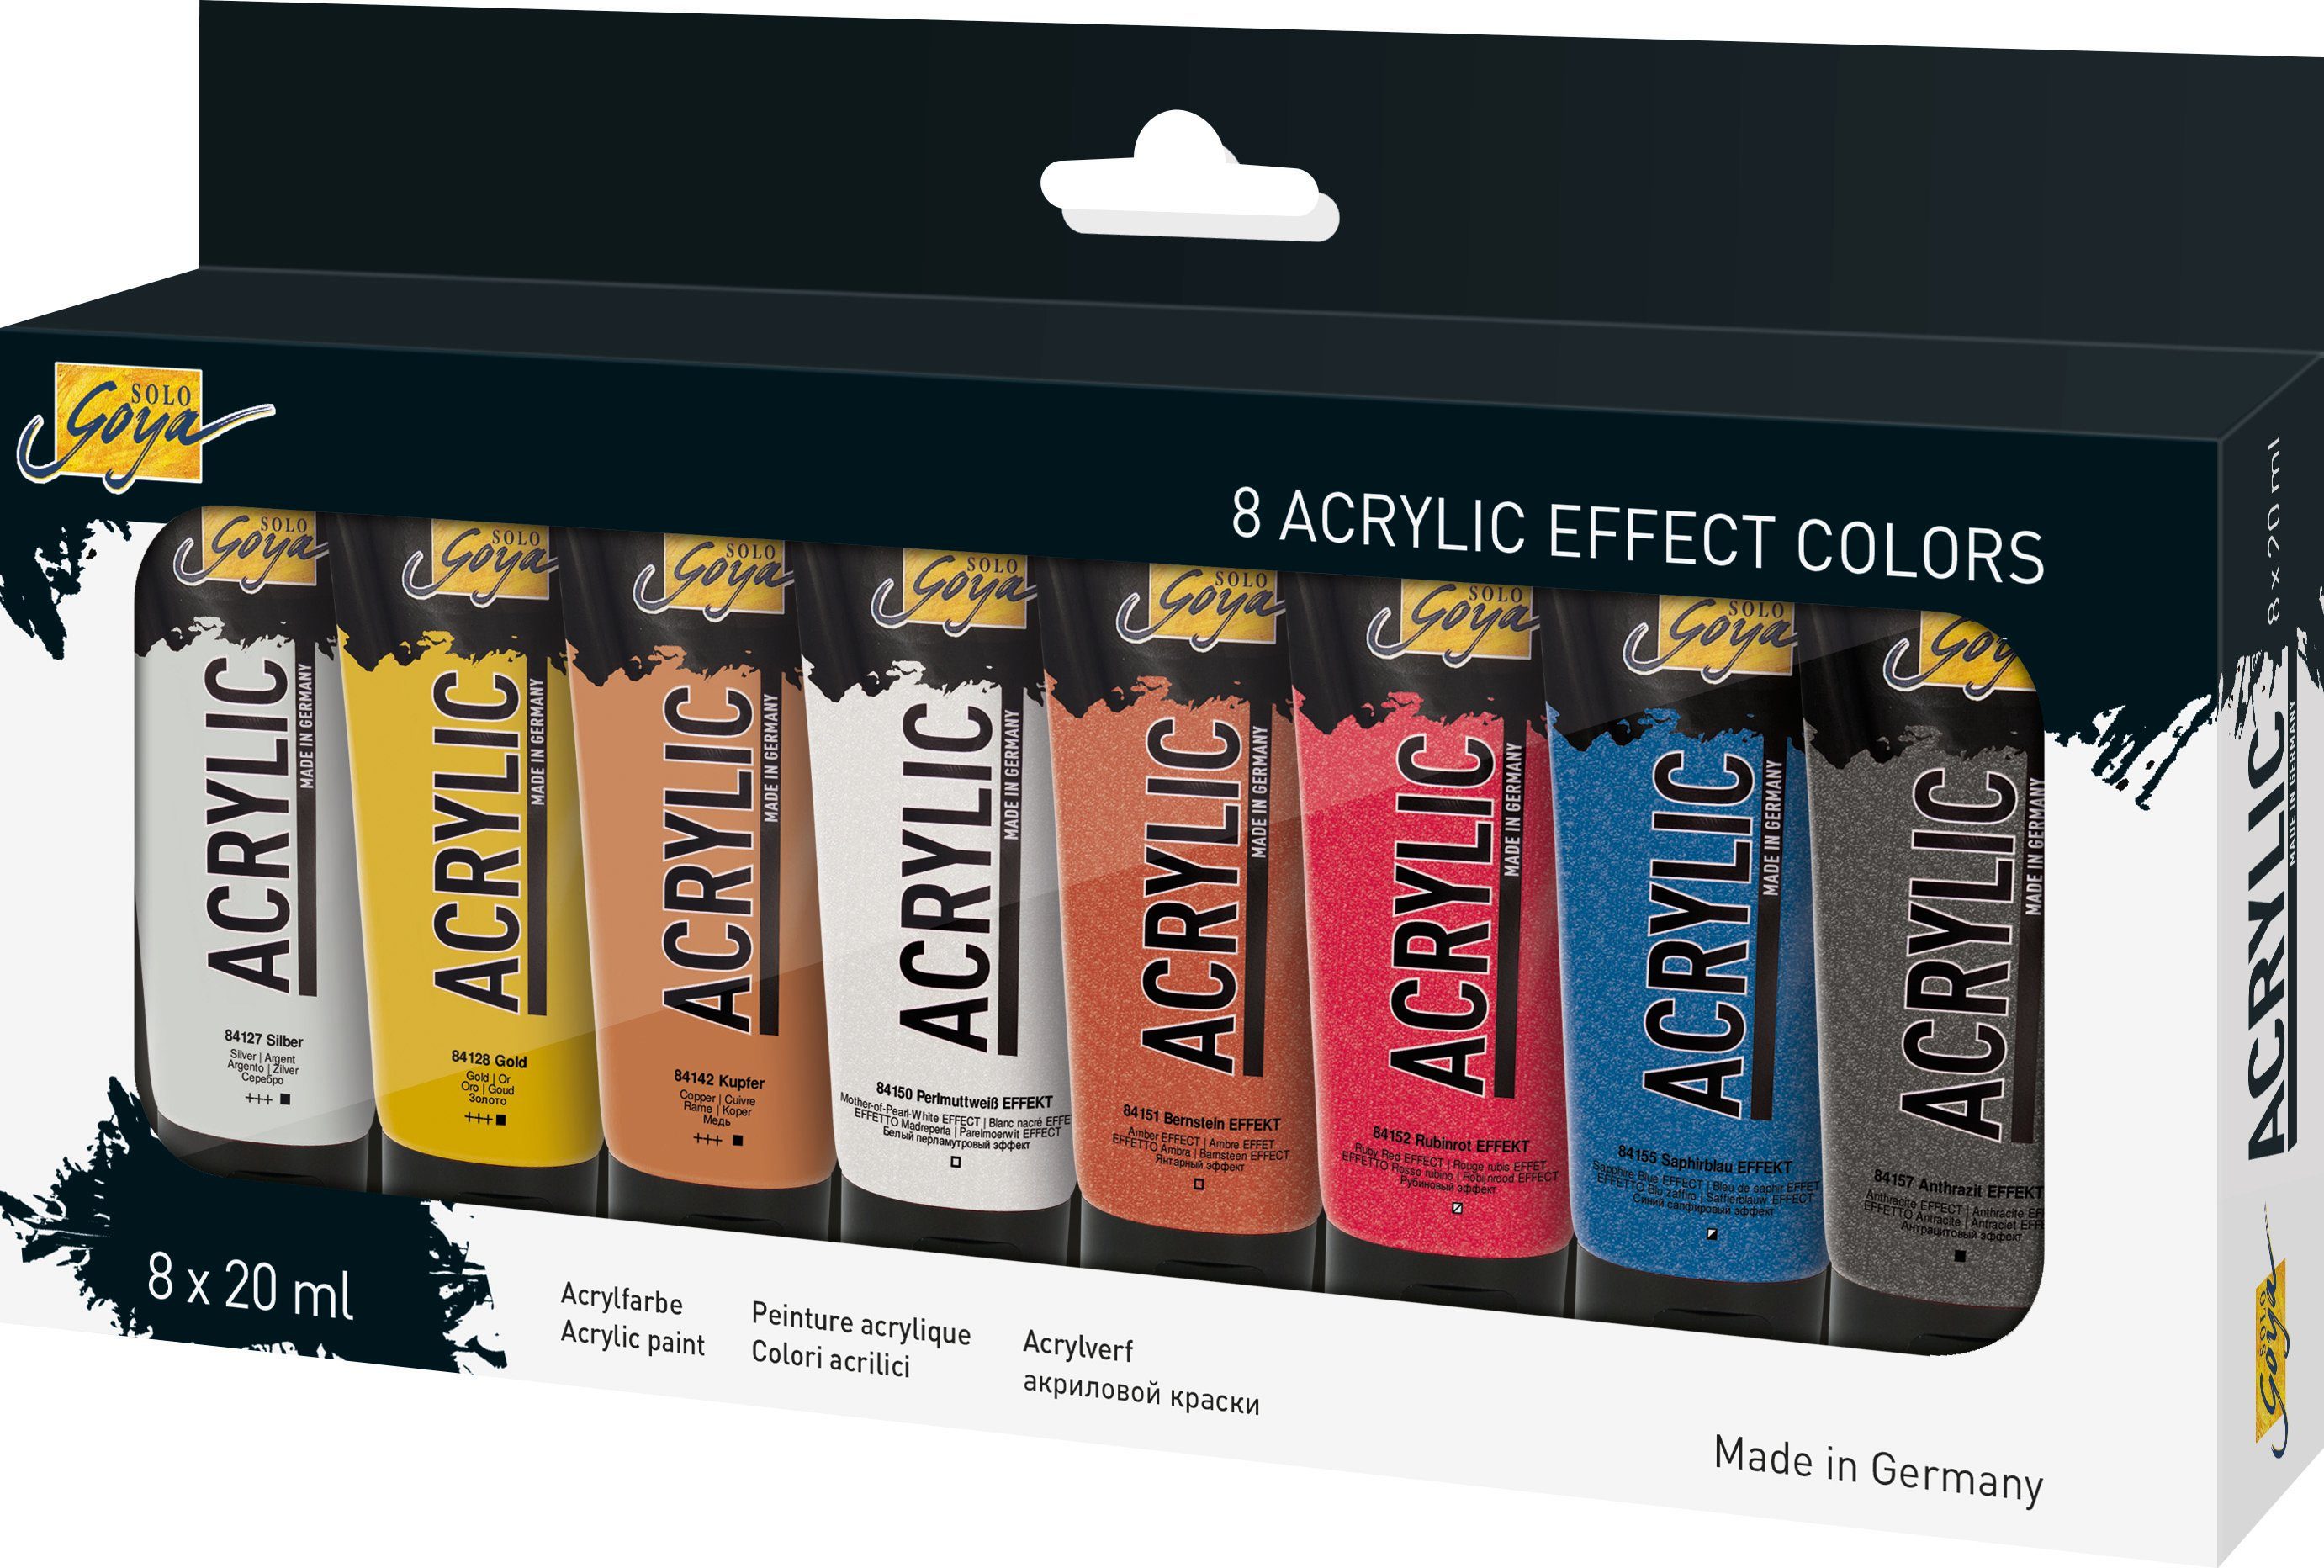 Kreul Acrylfarbe Acrylfarbe Solo Goya Acrylic Effect Colors, 8er-Set á 20 ml